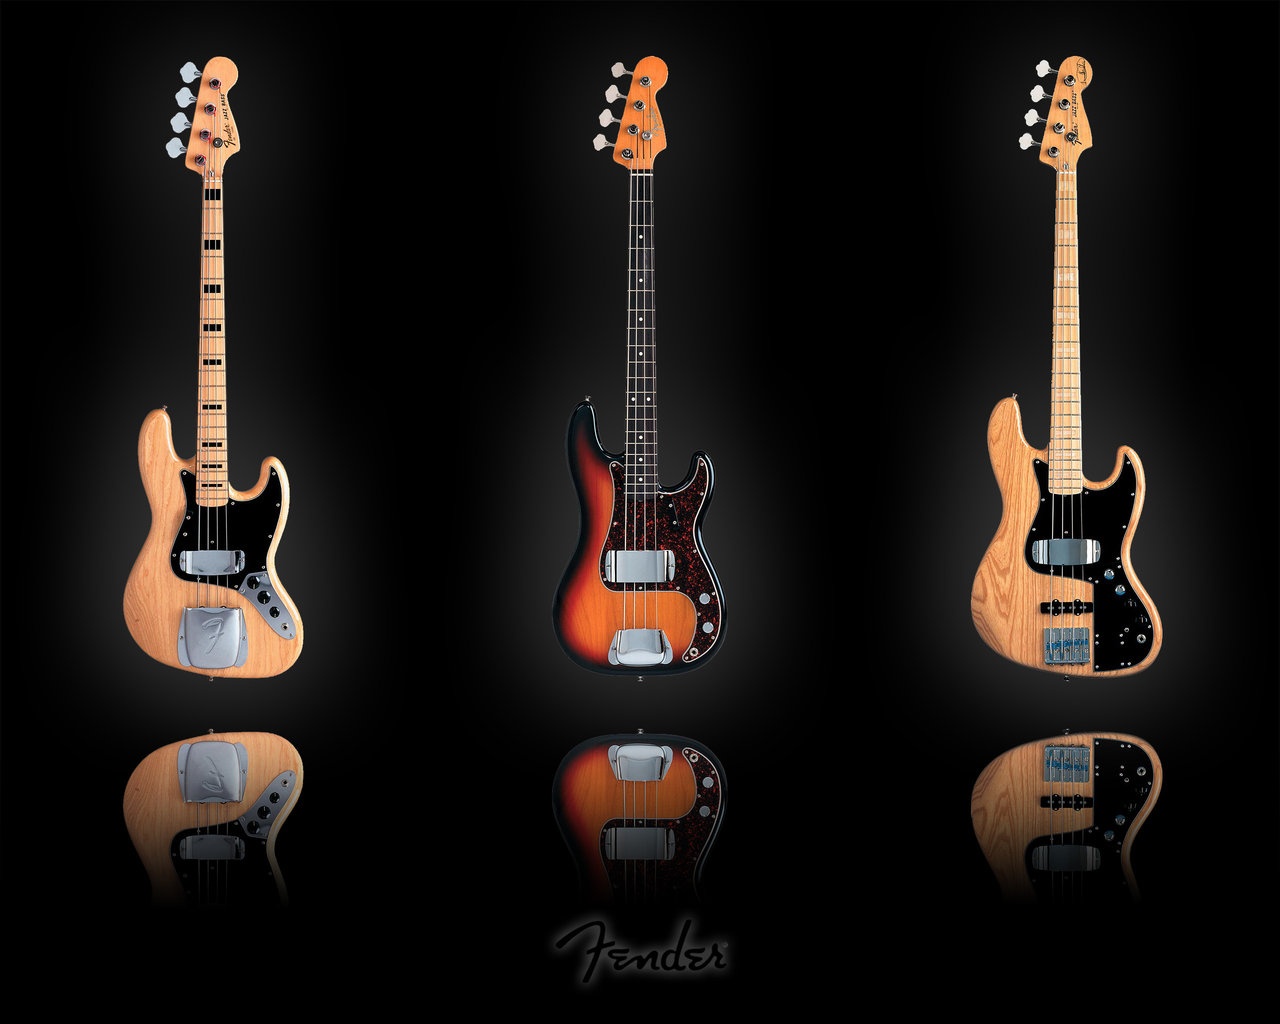 Fender Bass Guitar Desktop Wallpaper And Stock Photos